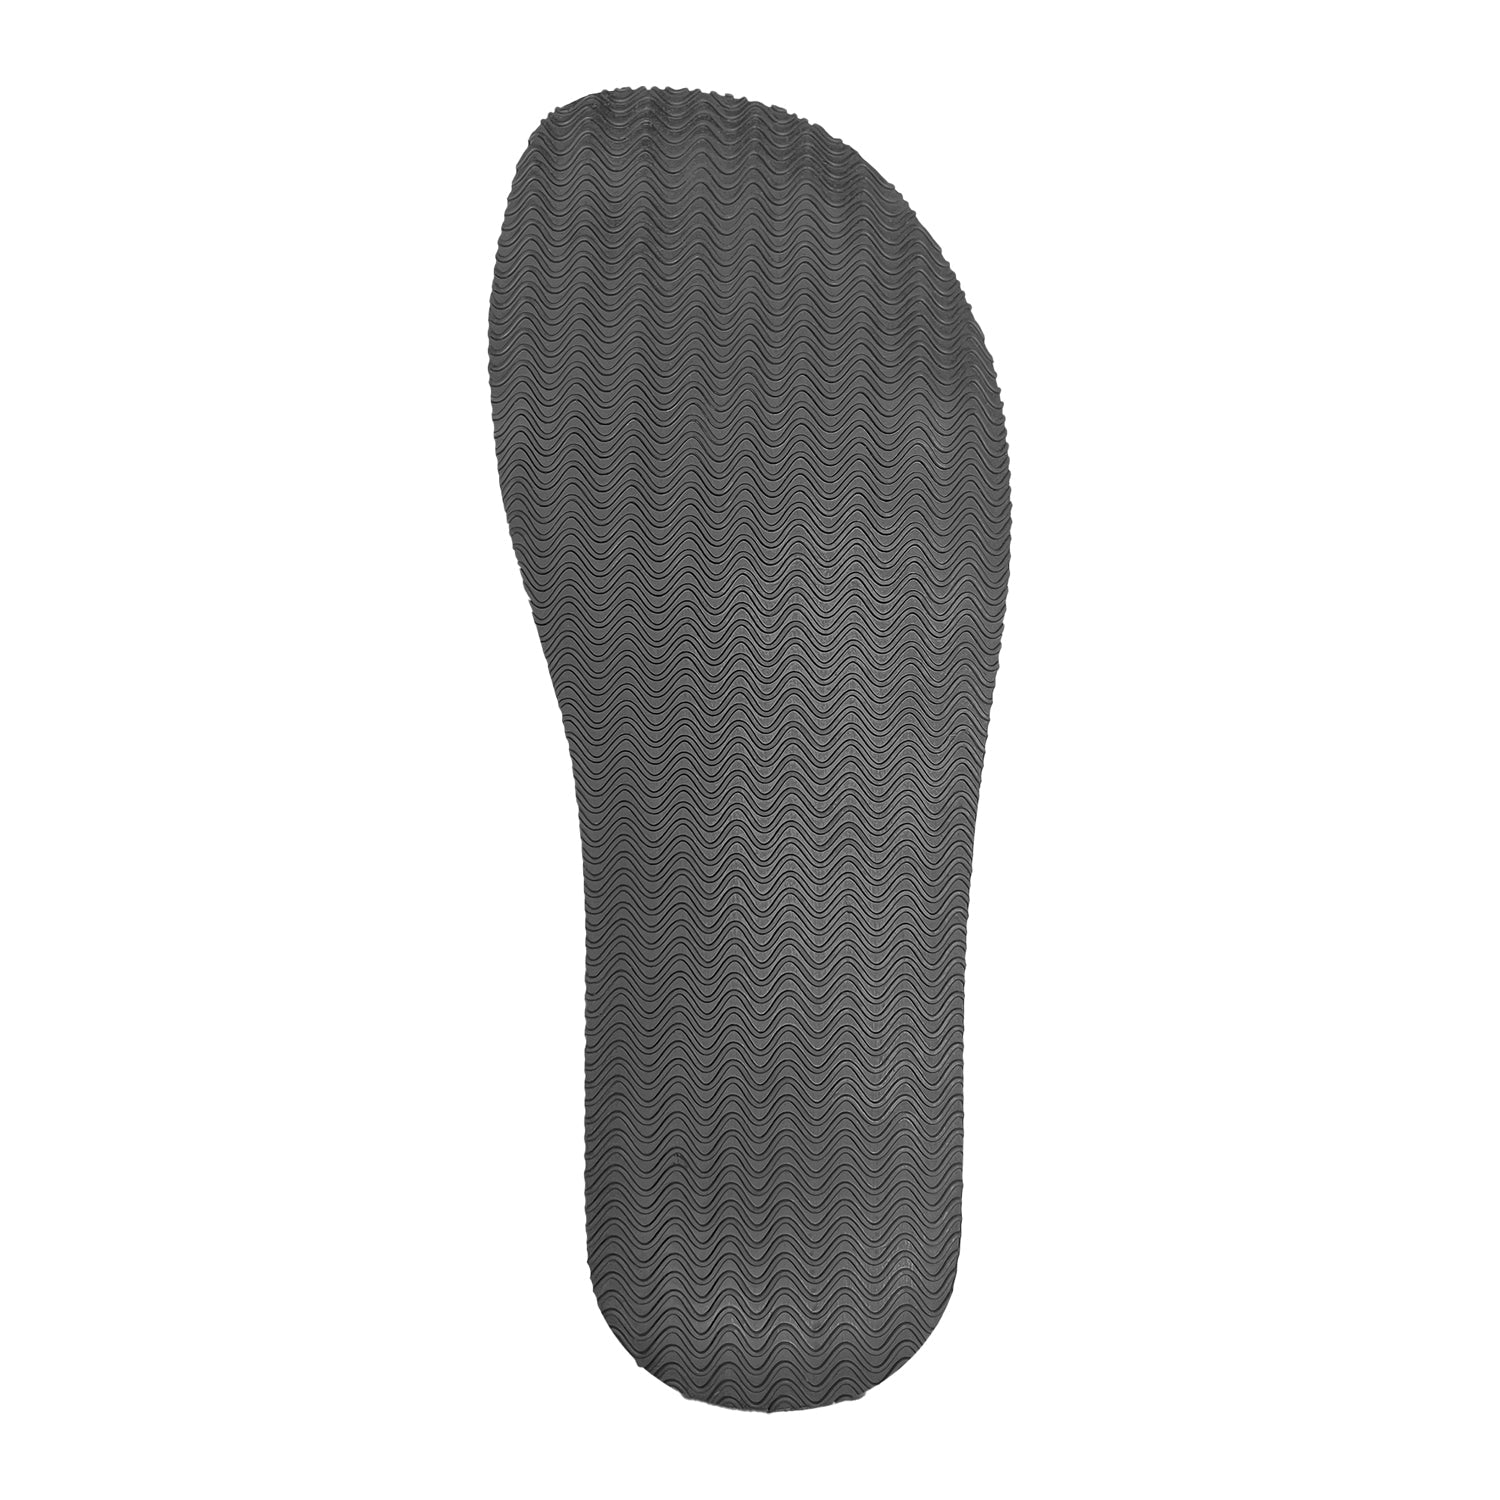 Bearfoot - Ursus S - LT / Ice Grey (Blemished) - Shoe